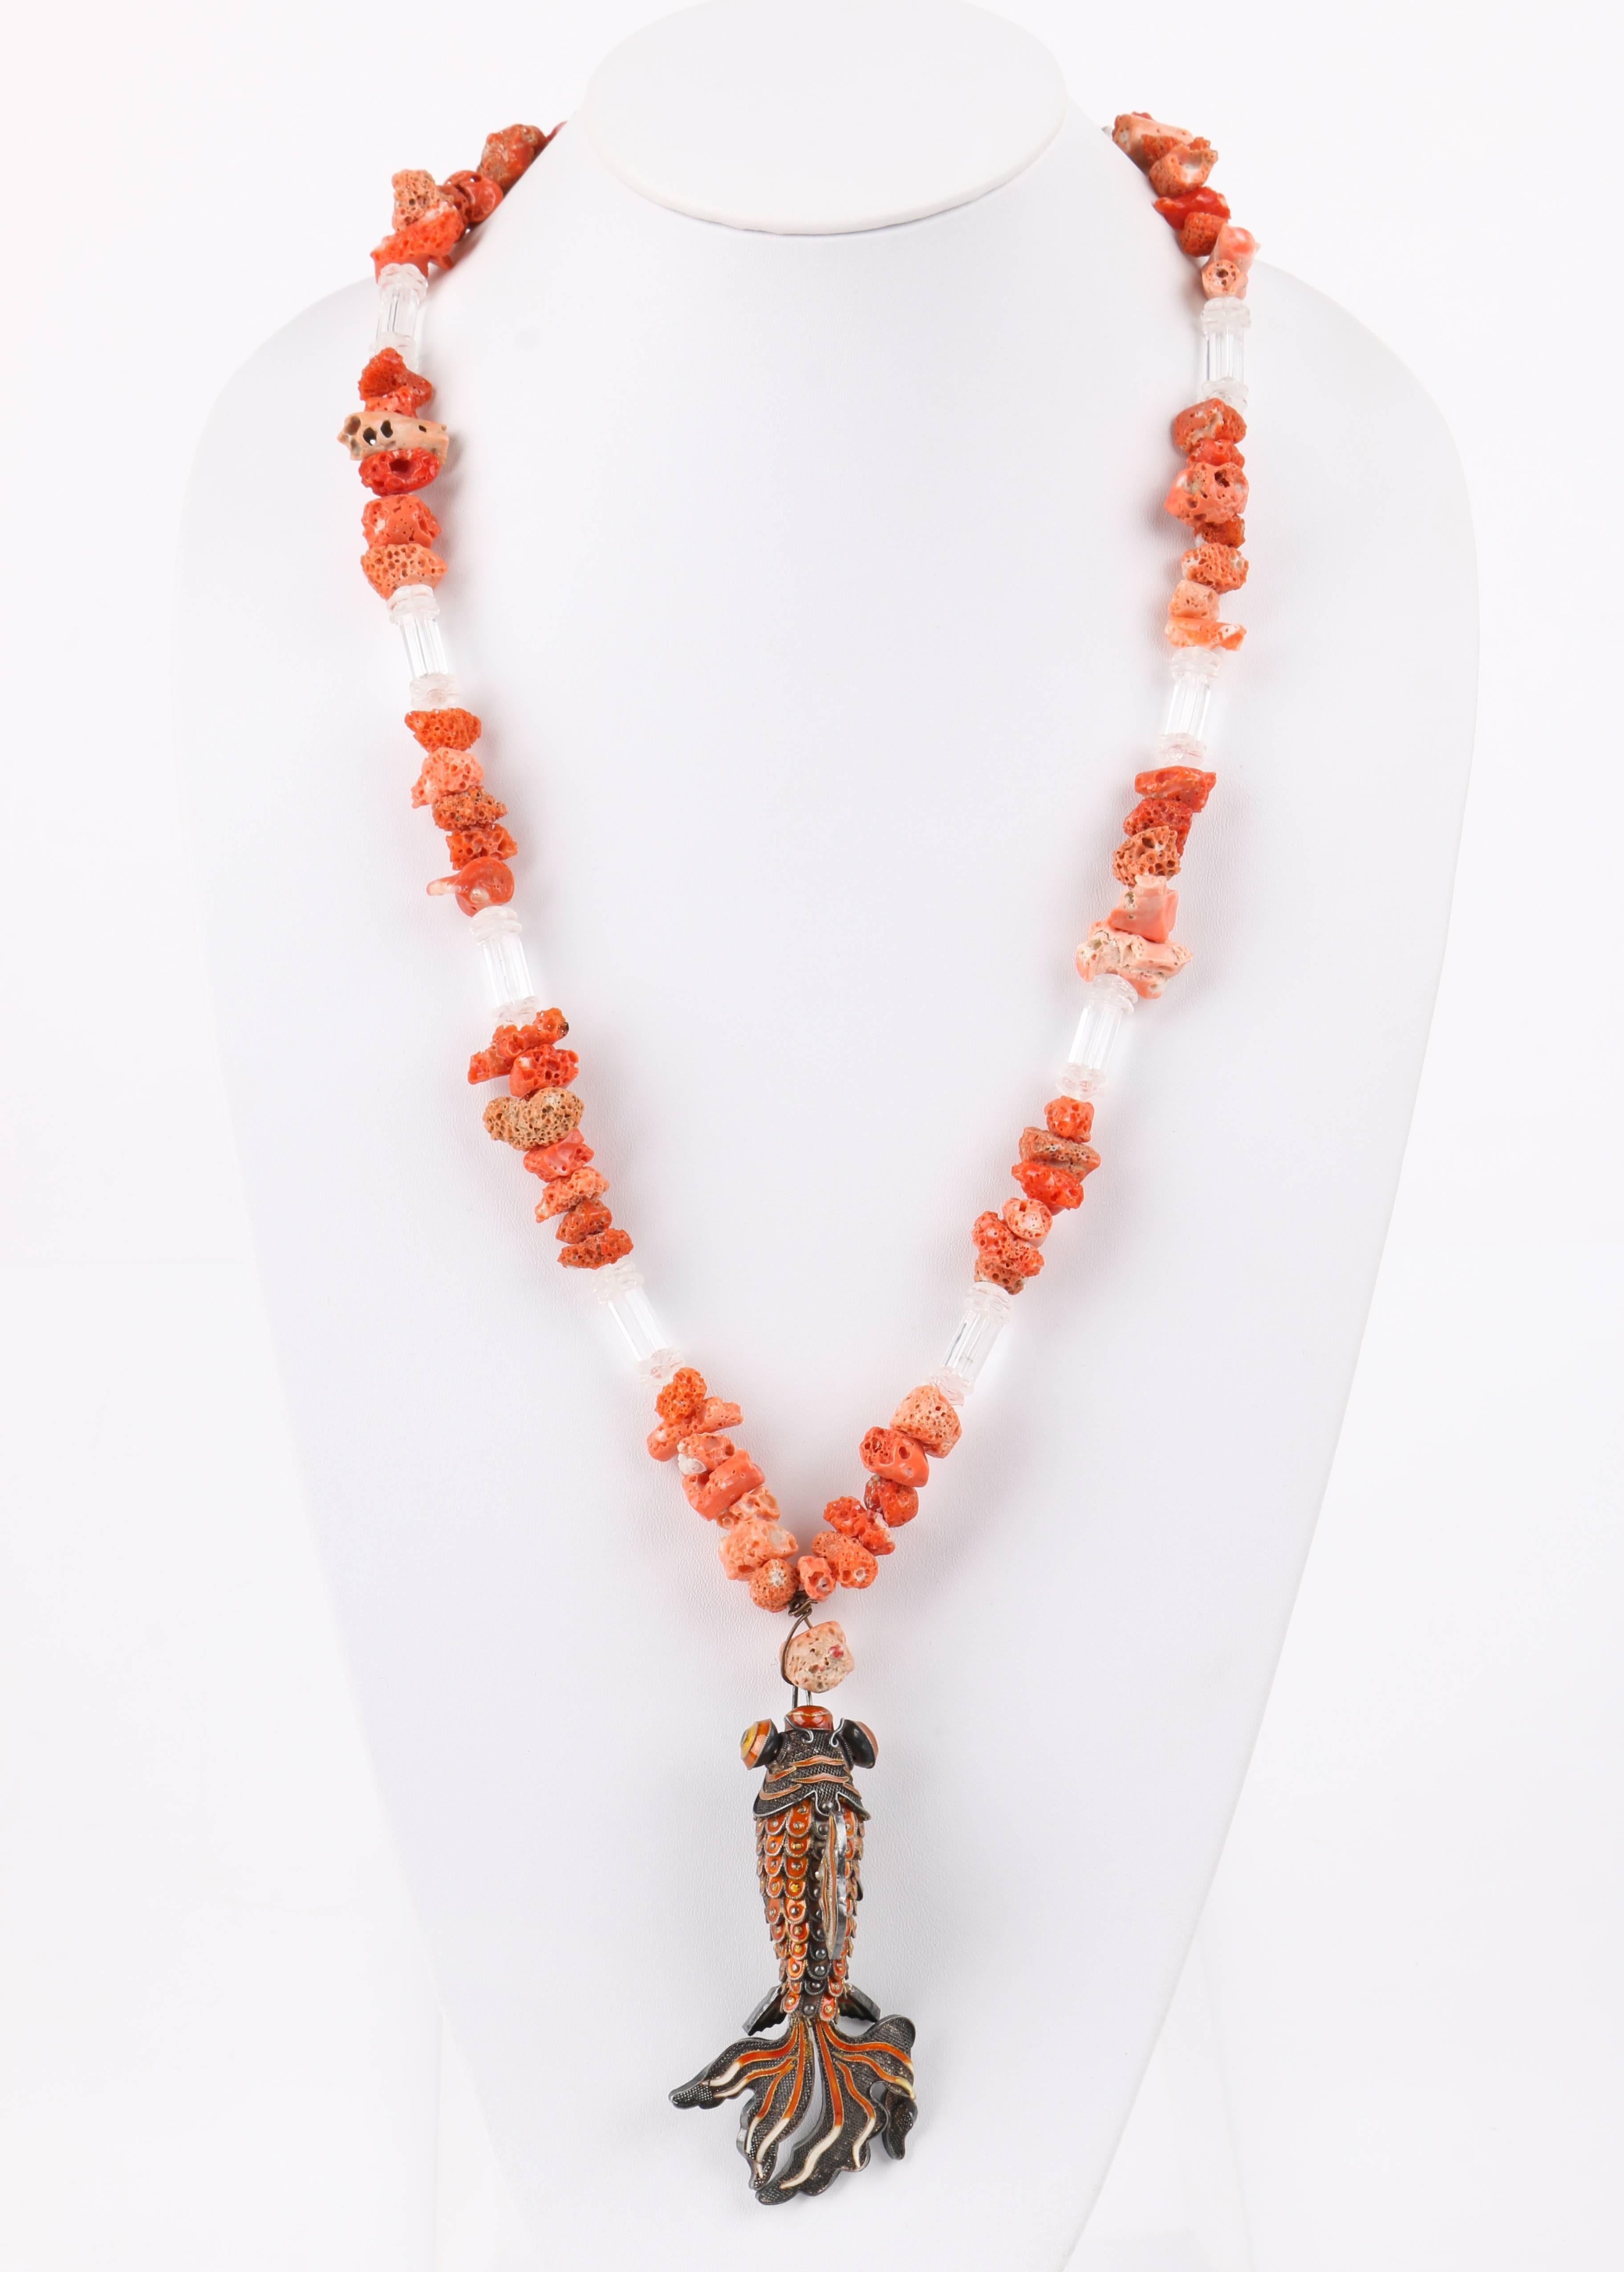 Vintage rohen Korallen und klar Perlen artikuliert Cloisonne Emaille Koi Fisch Anhänger Halskette. Silberfarbener skulpturaler chinesischer Koi-Fisch-Anhänger aus Metall mit beweglichem Körper, Augen und Flossen. Details aus Cloisonné-Emaille an